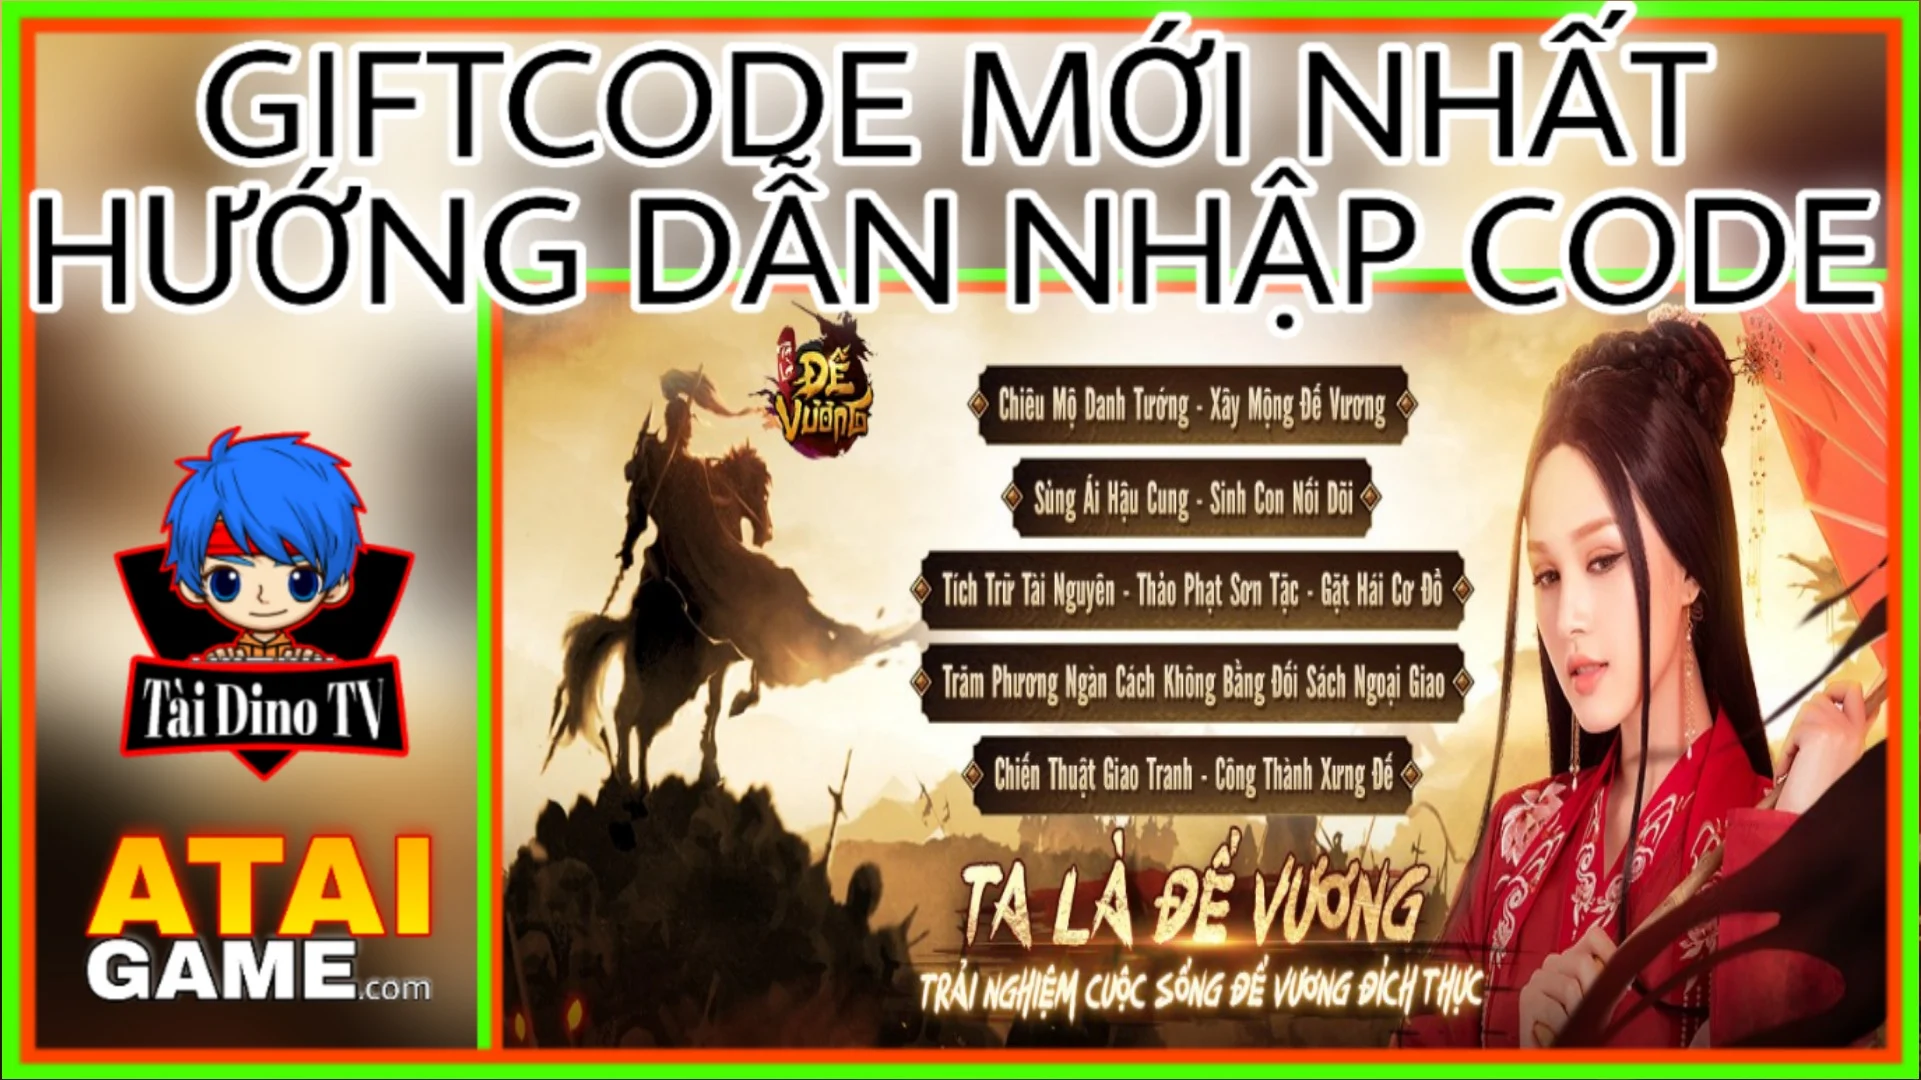 Ta Là Đế Vương - Vplay Giftcode mới nhất, hướng dẫn nhập code